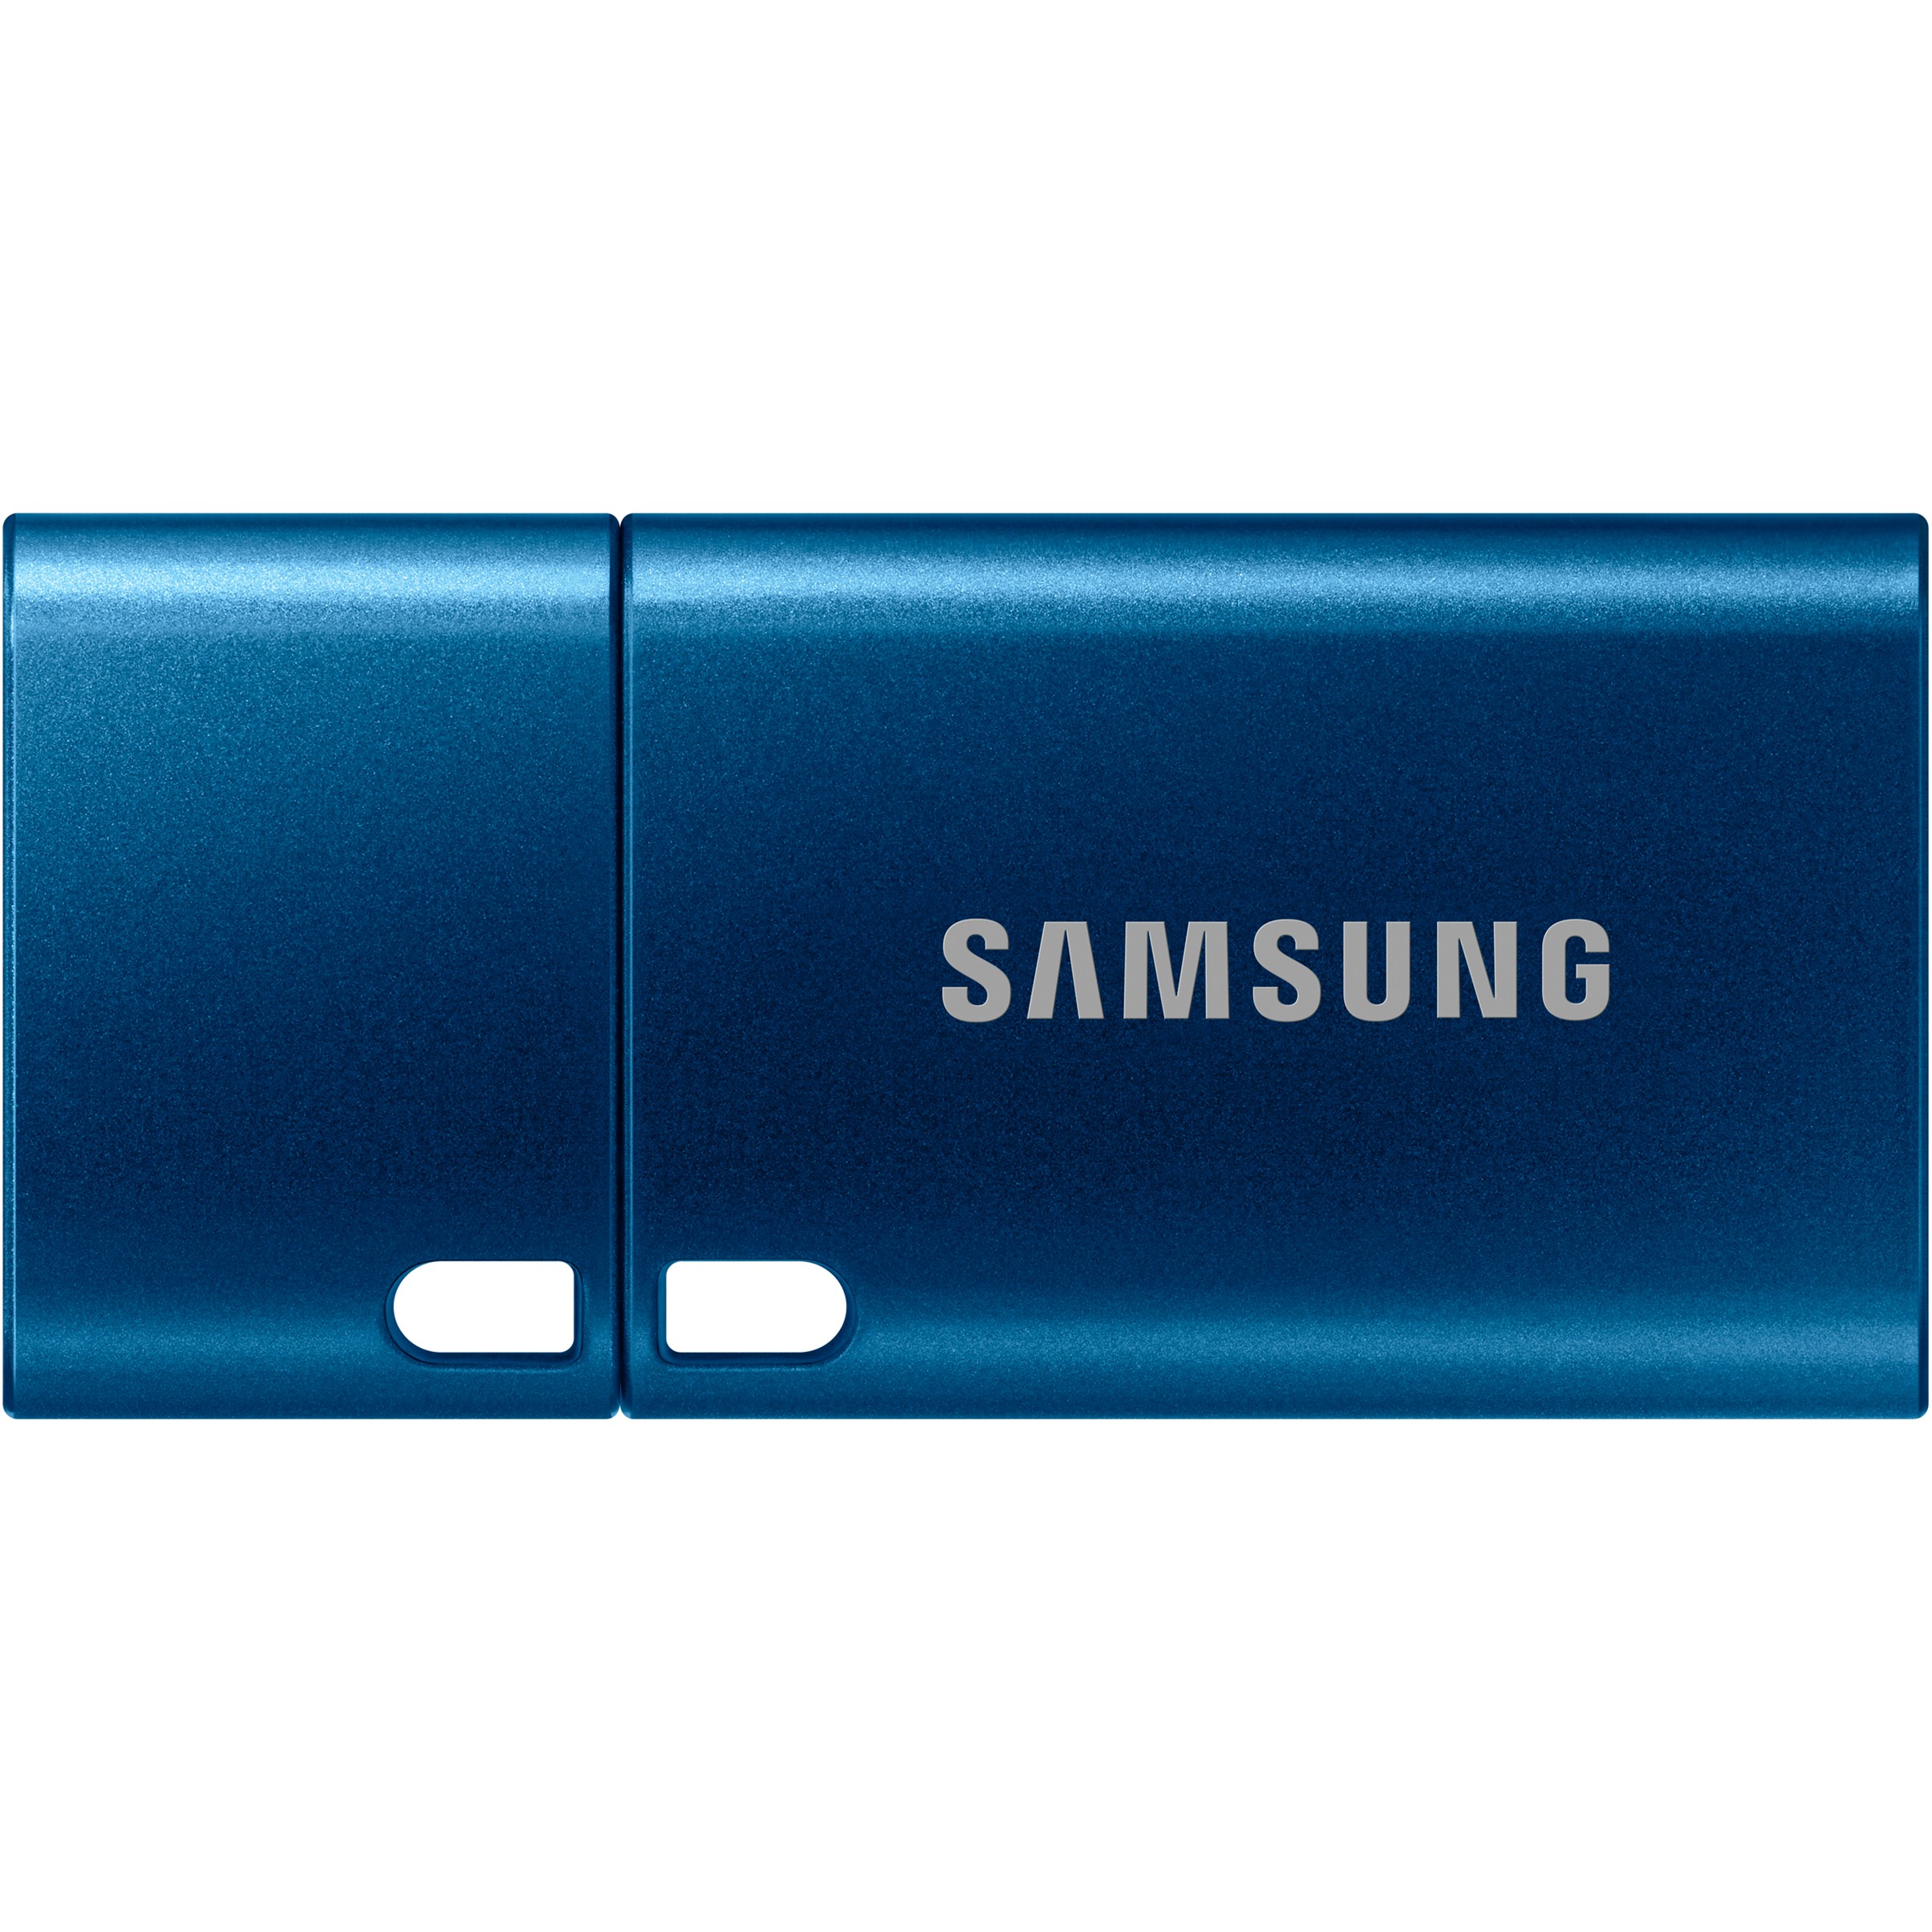 Samsung MUF-128DA USB flash drive - MUF-128DA/APC